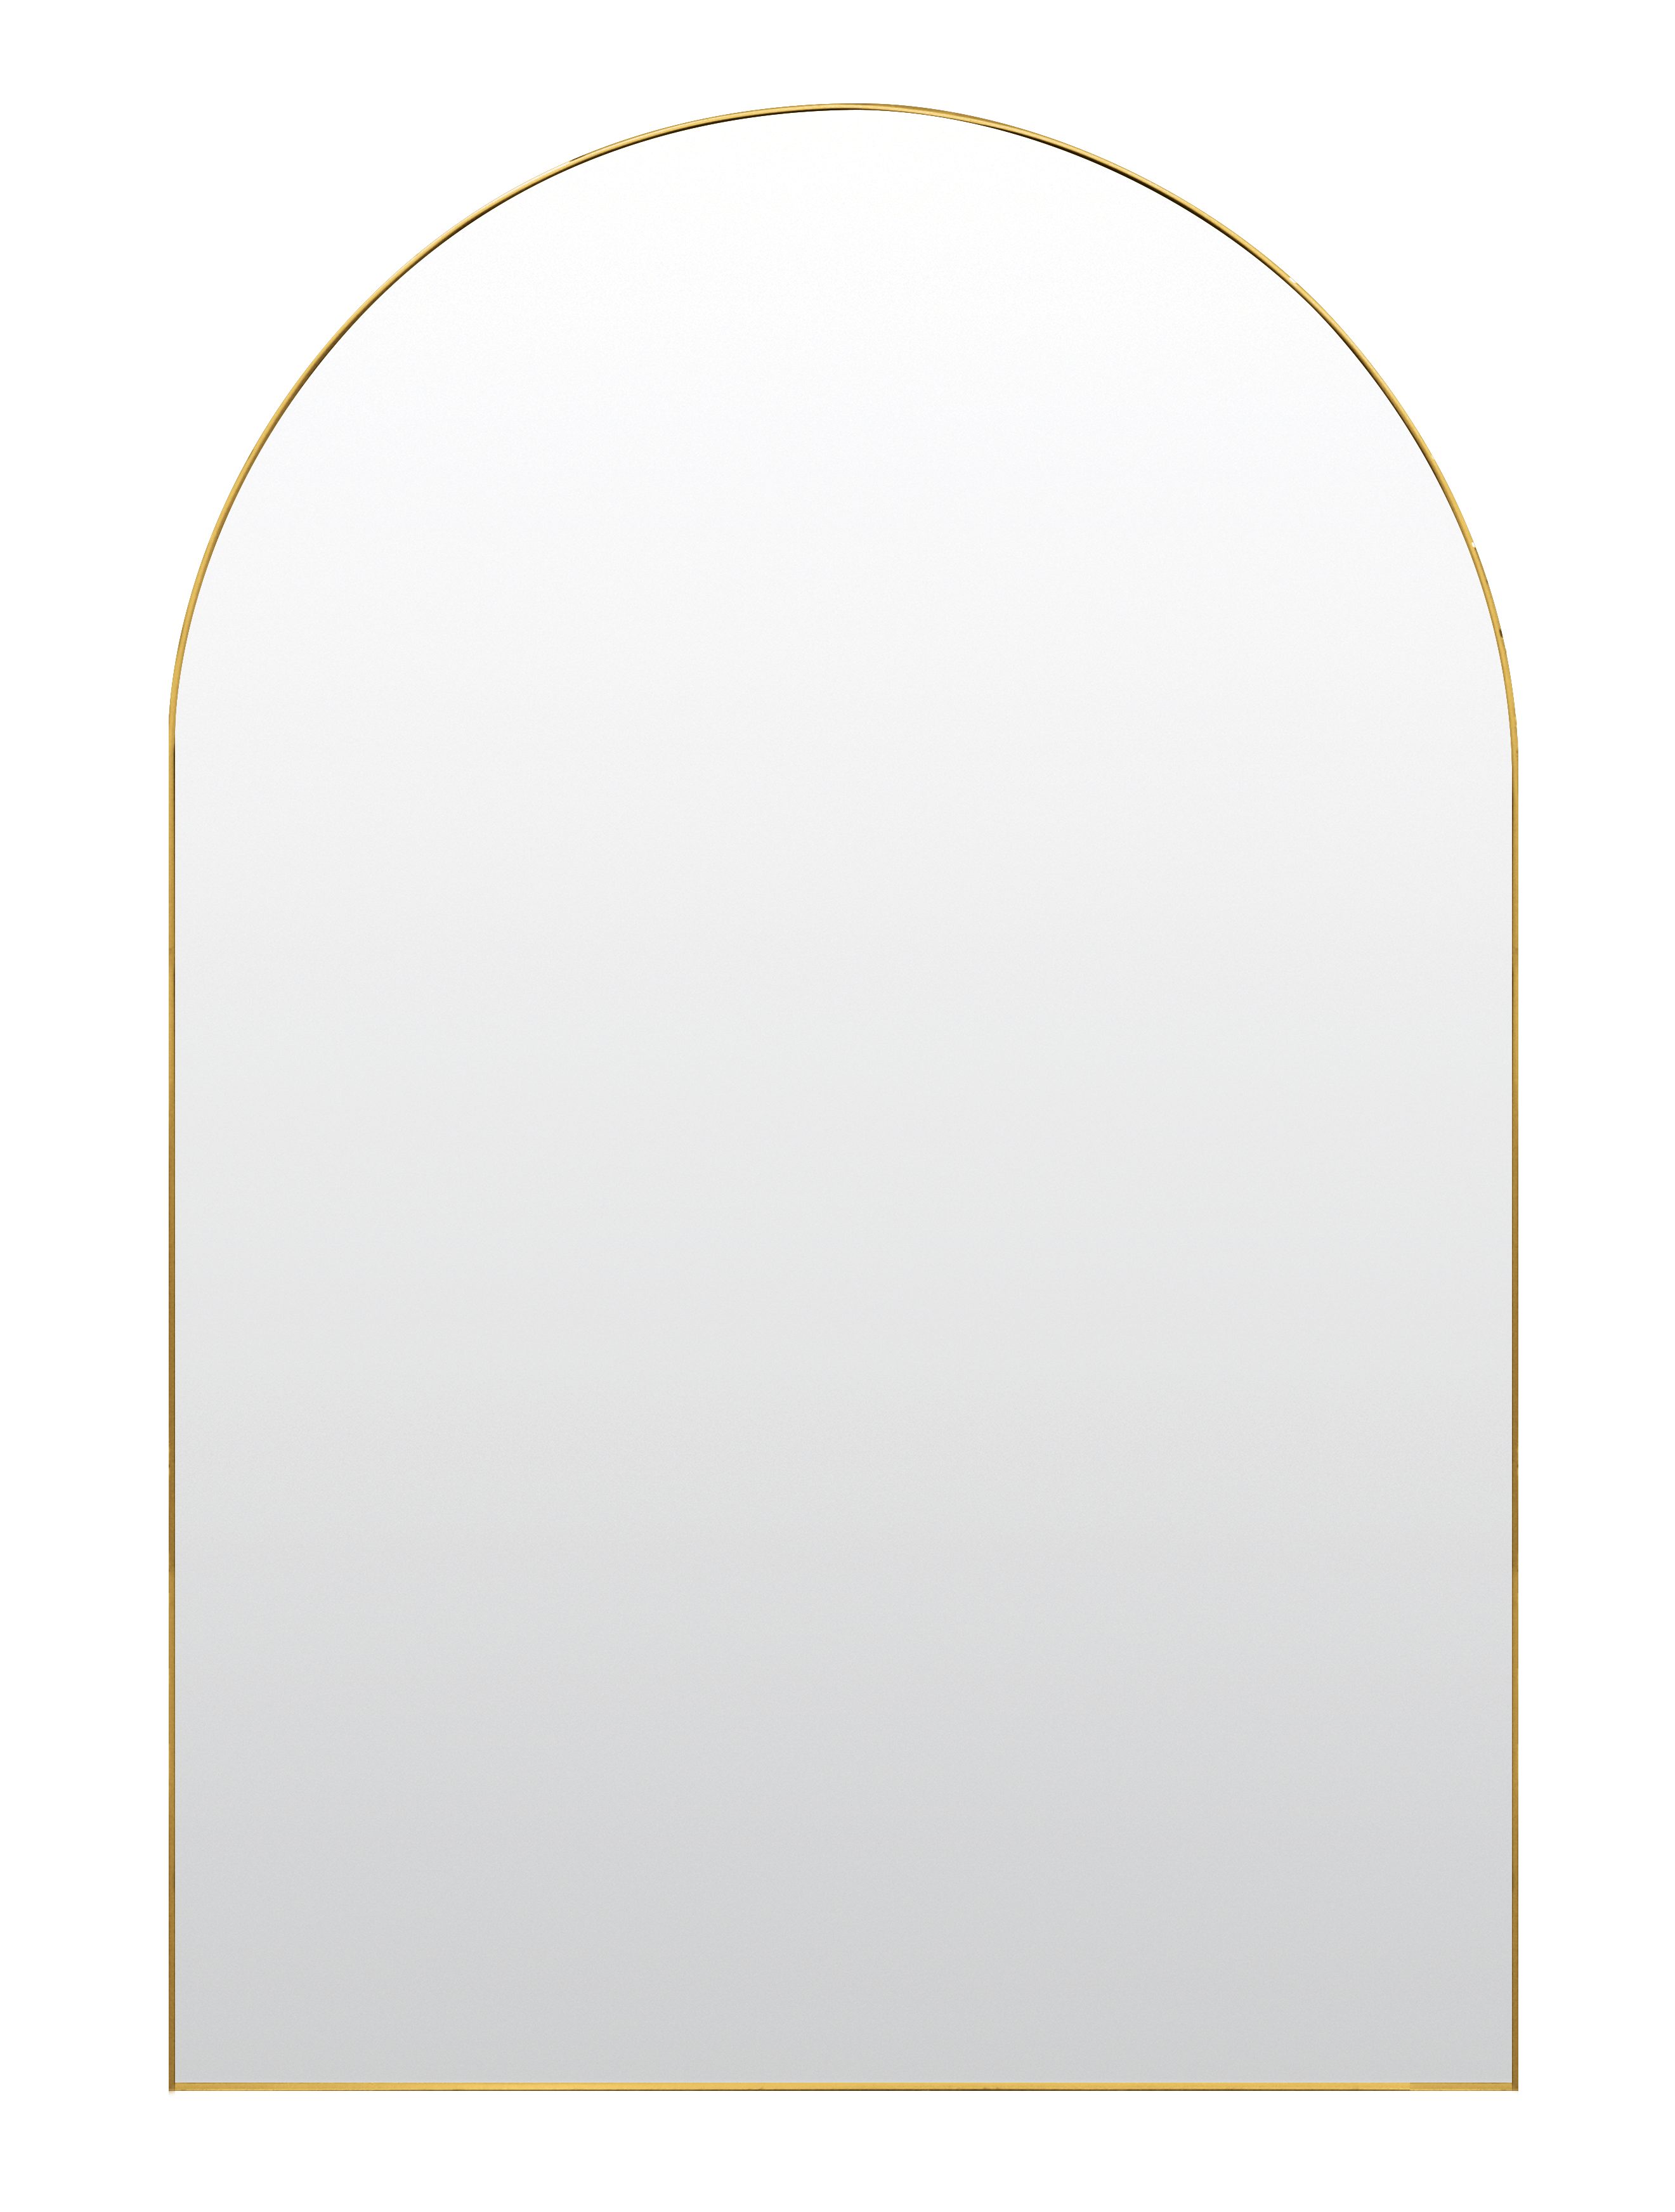 Deko-Werk 24 Rahmenspiegel-rund Spiegel Lotta Wandspiegel – Halbrund 60 x 90 cm Metallrahmen/Alurahmen, Rahmenfarbe gold